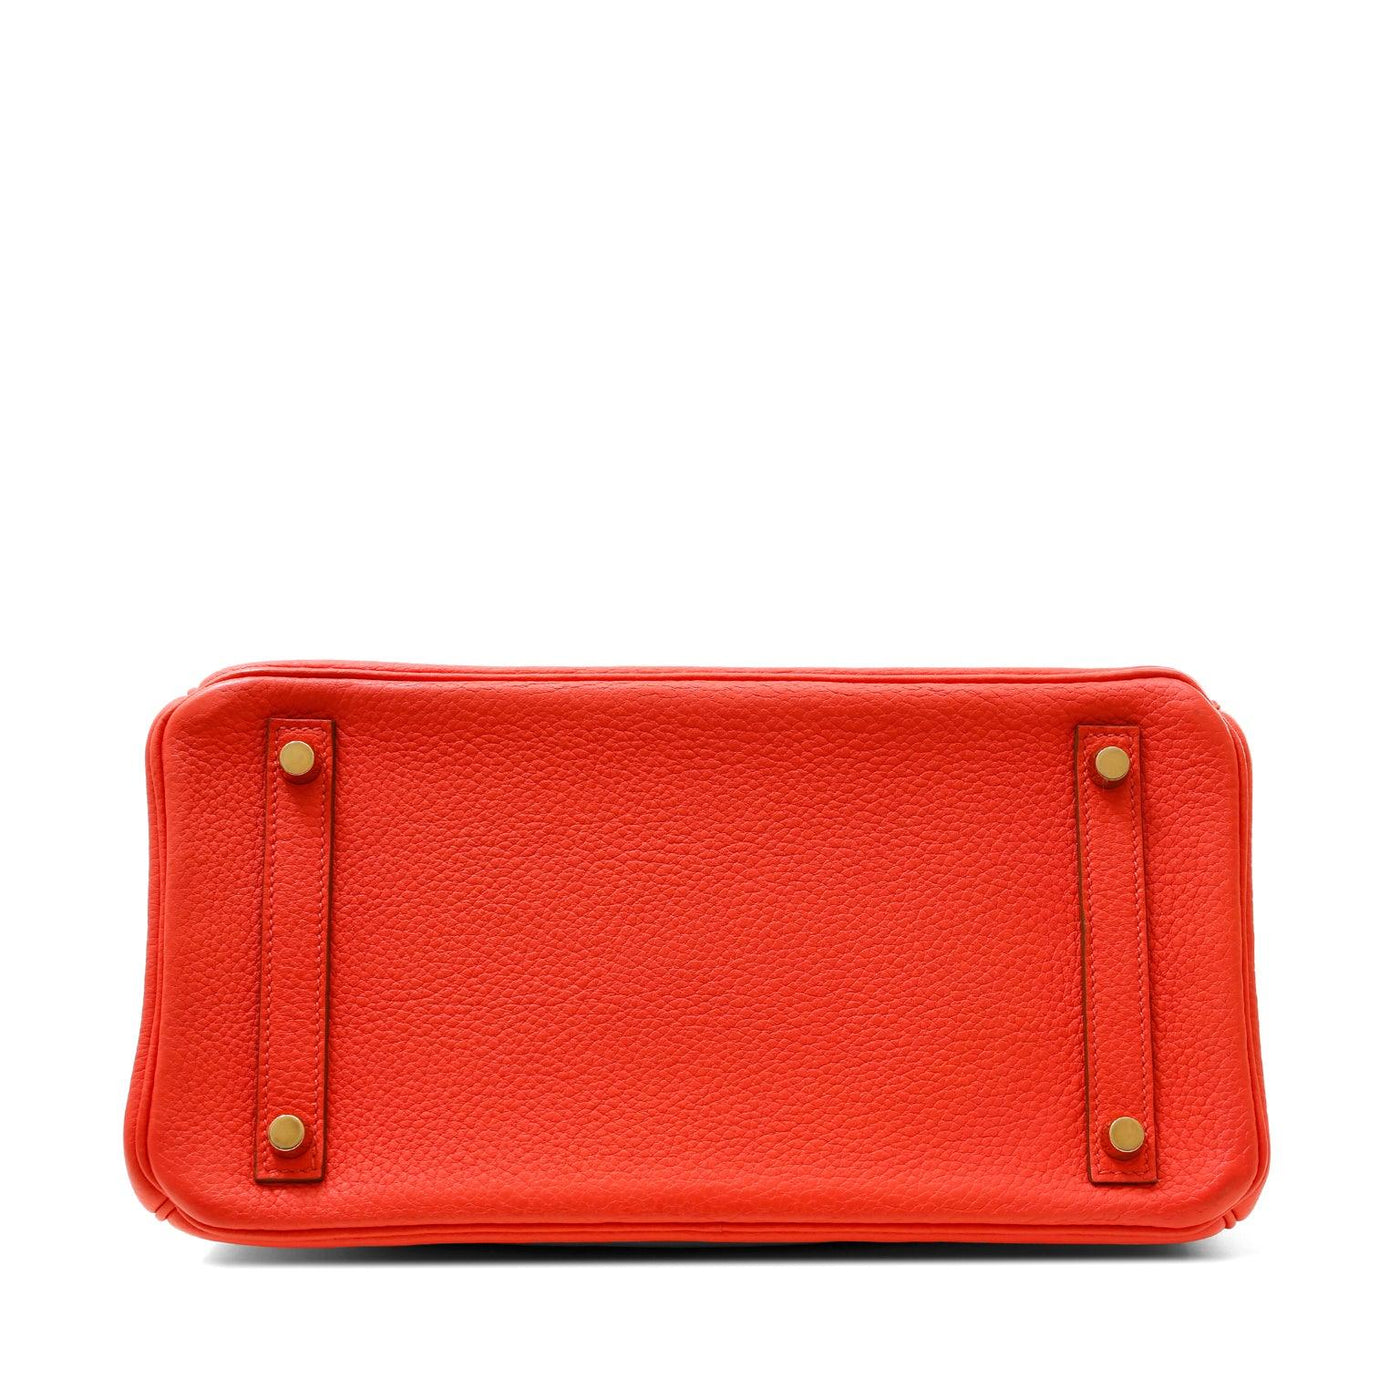 Hermes 30cm Birkin Red-Orange Togo w/ Gold Hardware #D - Only Authentics